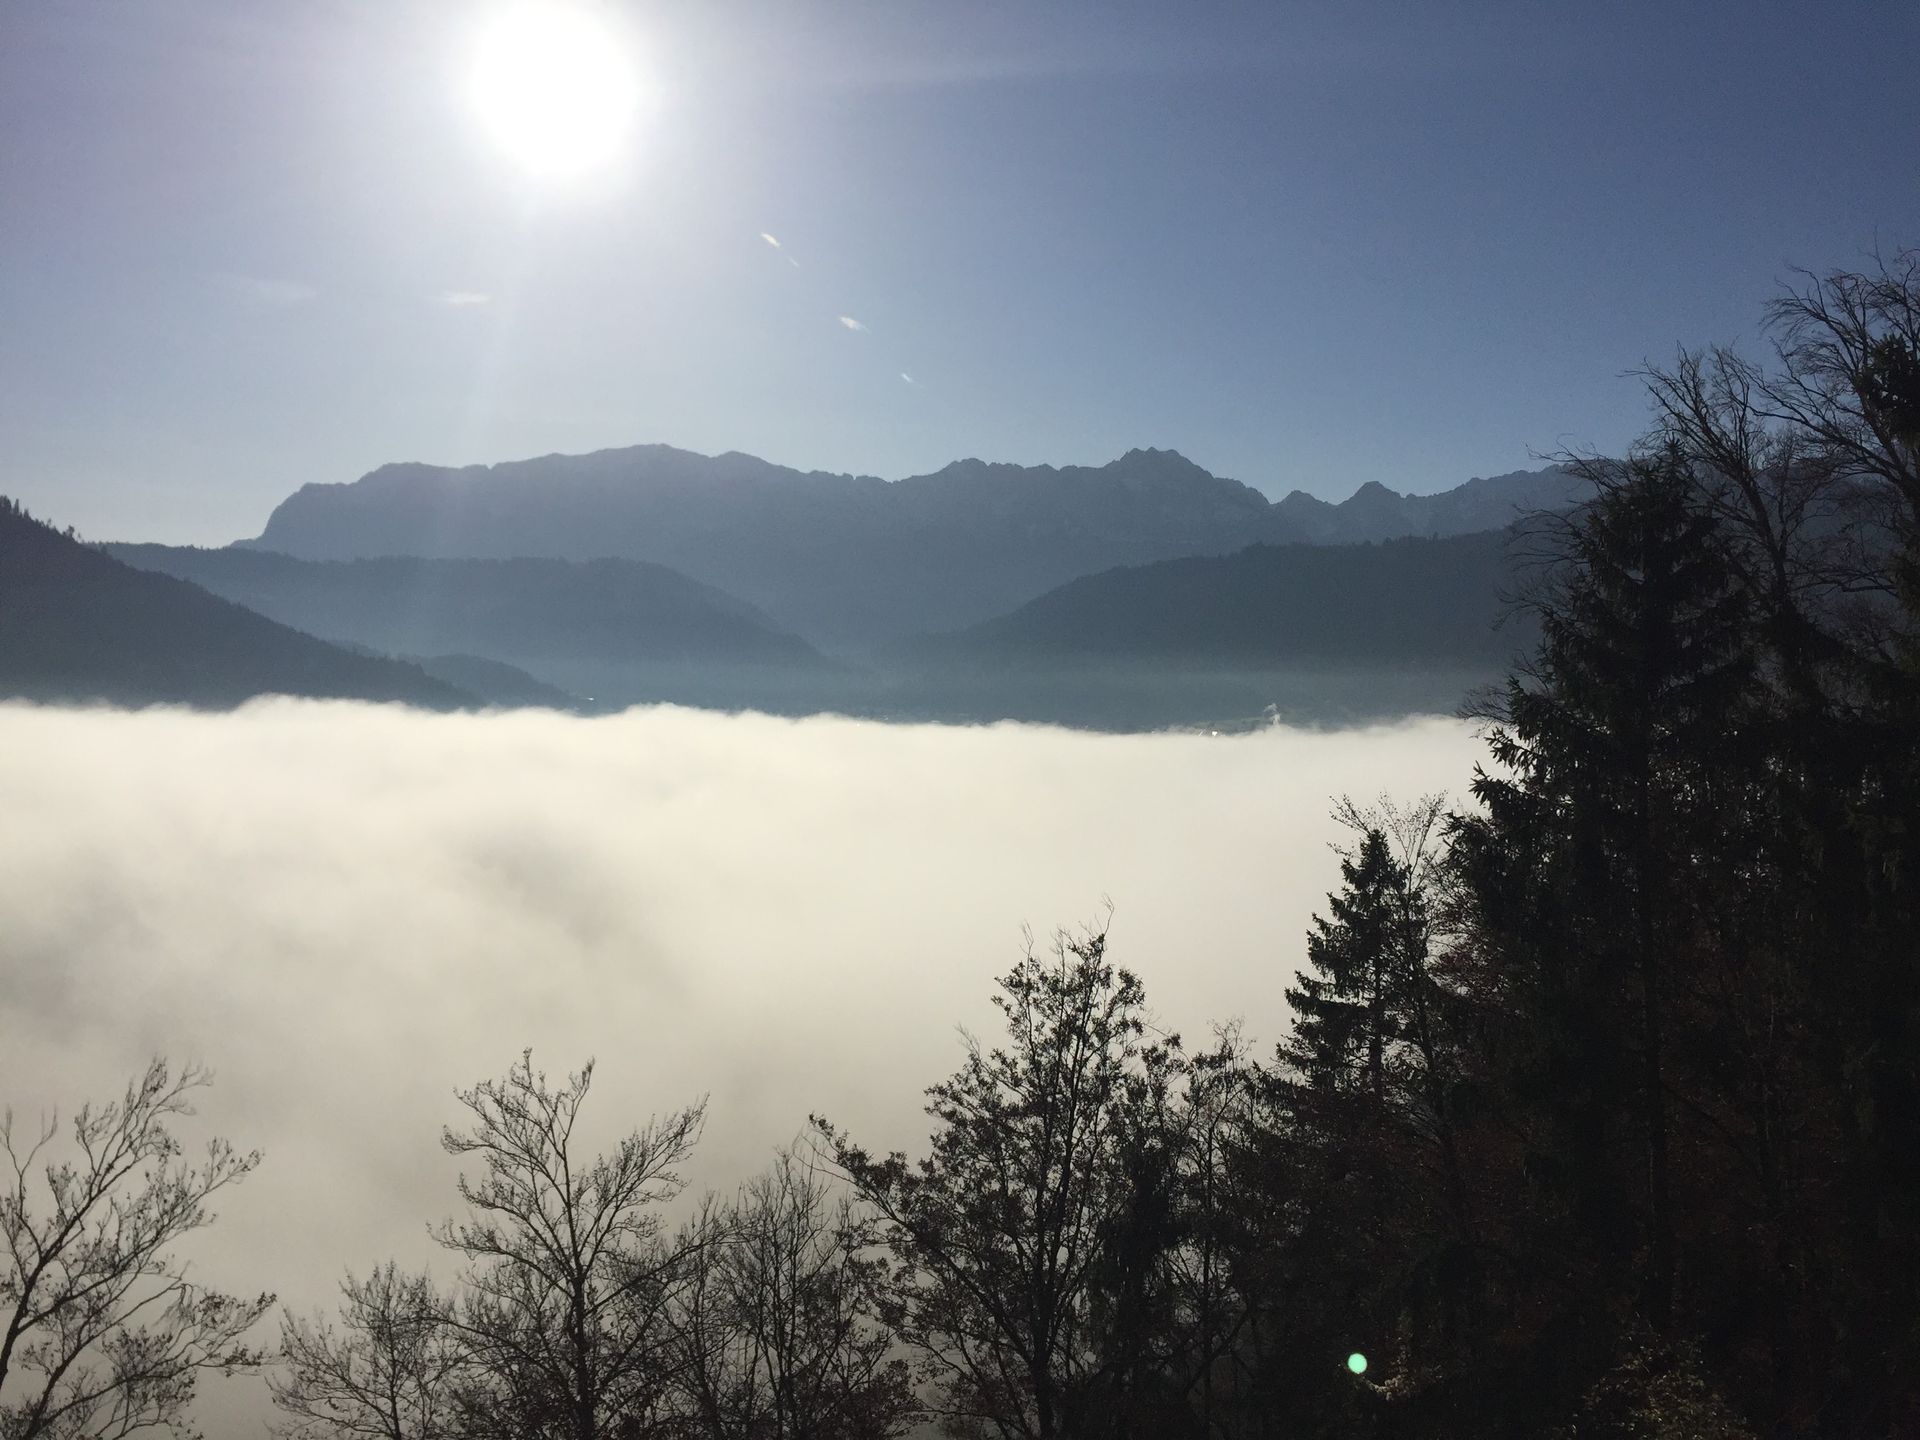 Herststimmung, Berge, Wettersteingebirge, Farchant, Garmisch-Partenkirchen, Nebel, Sonne